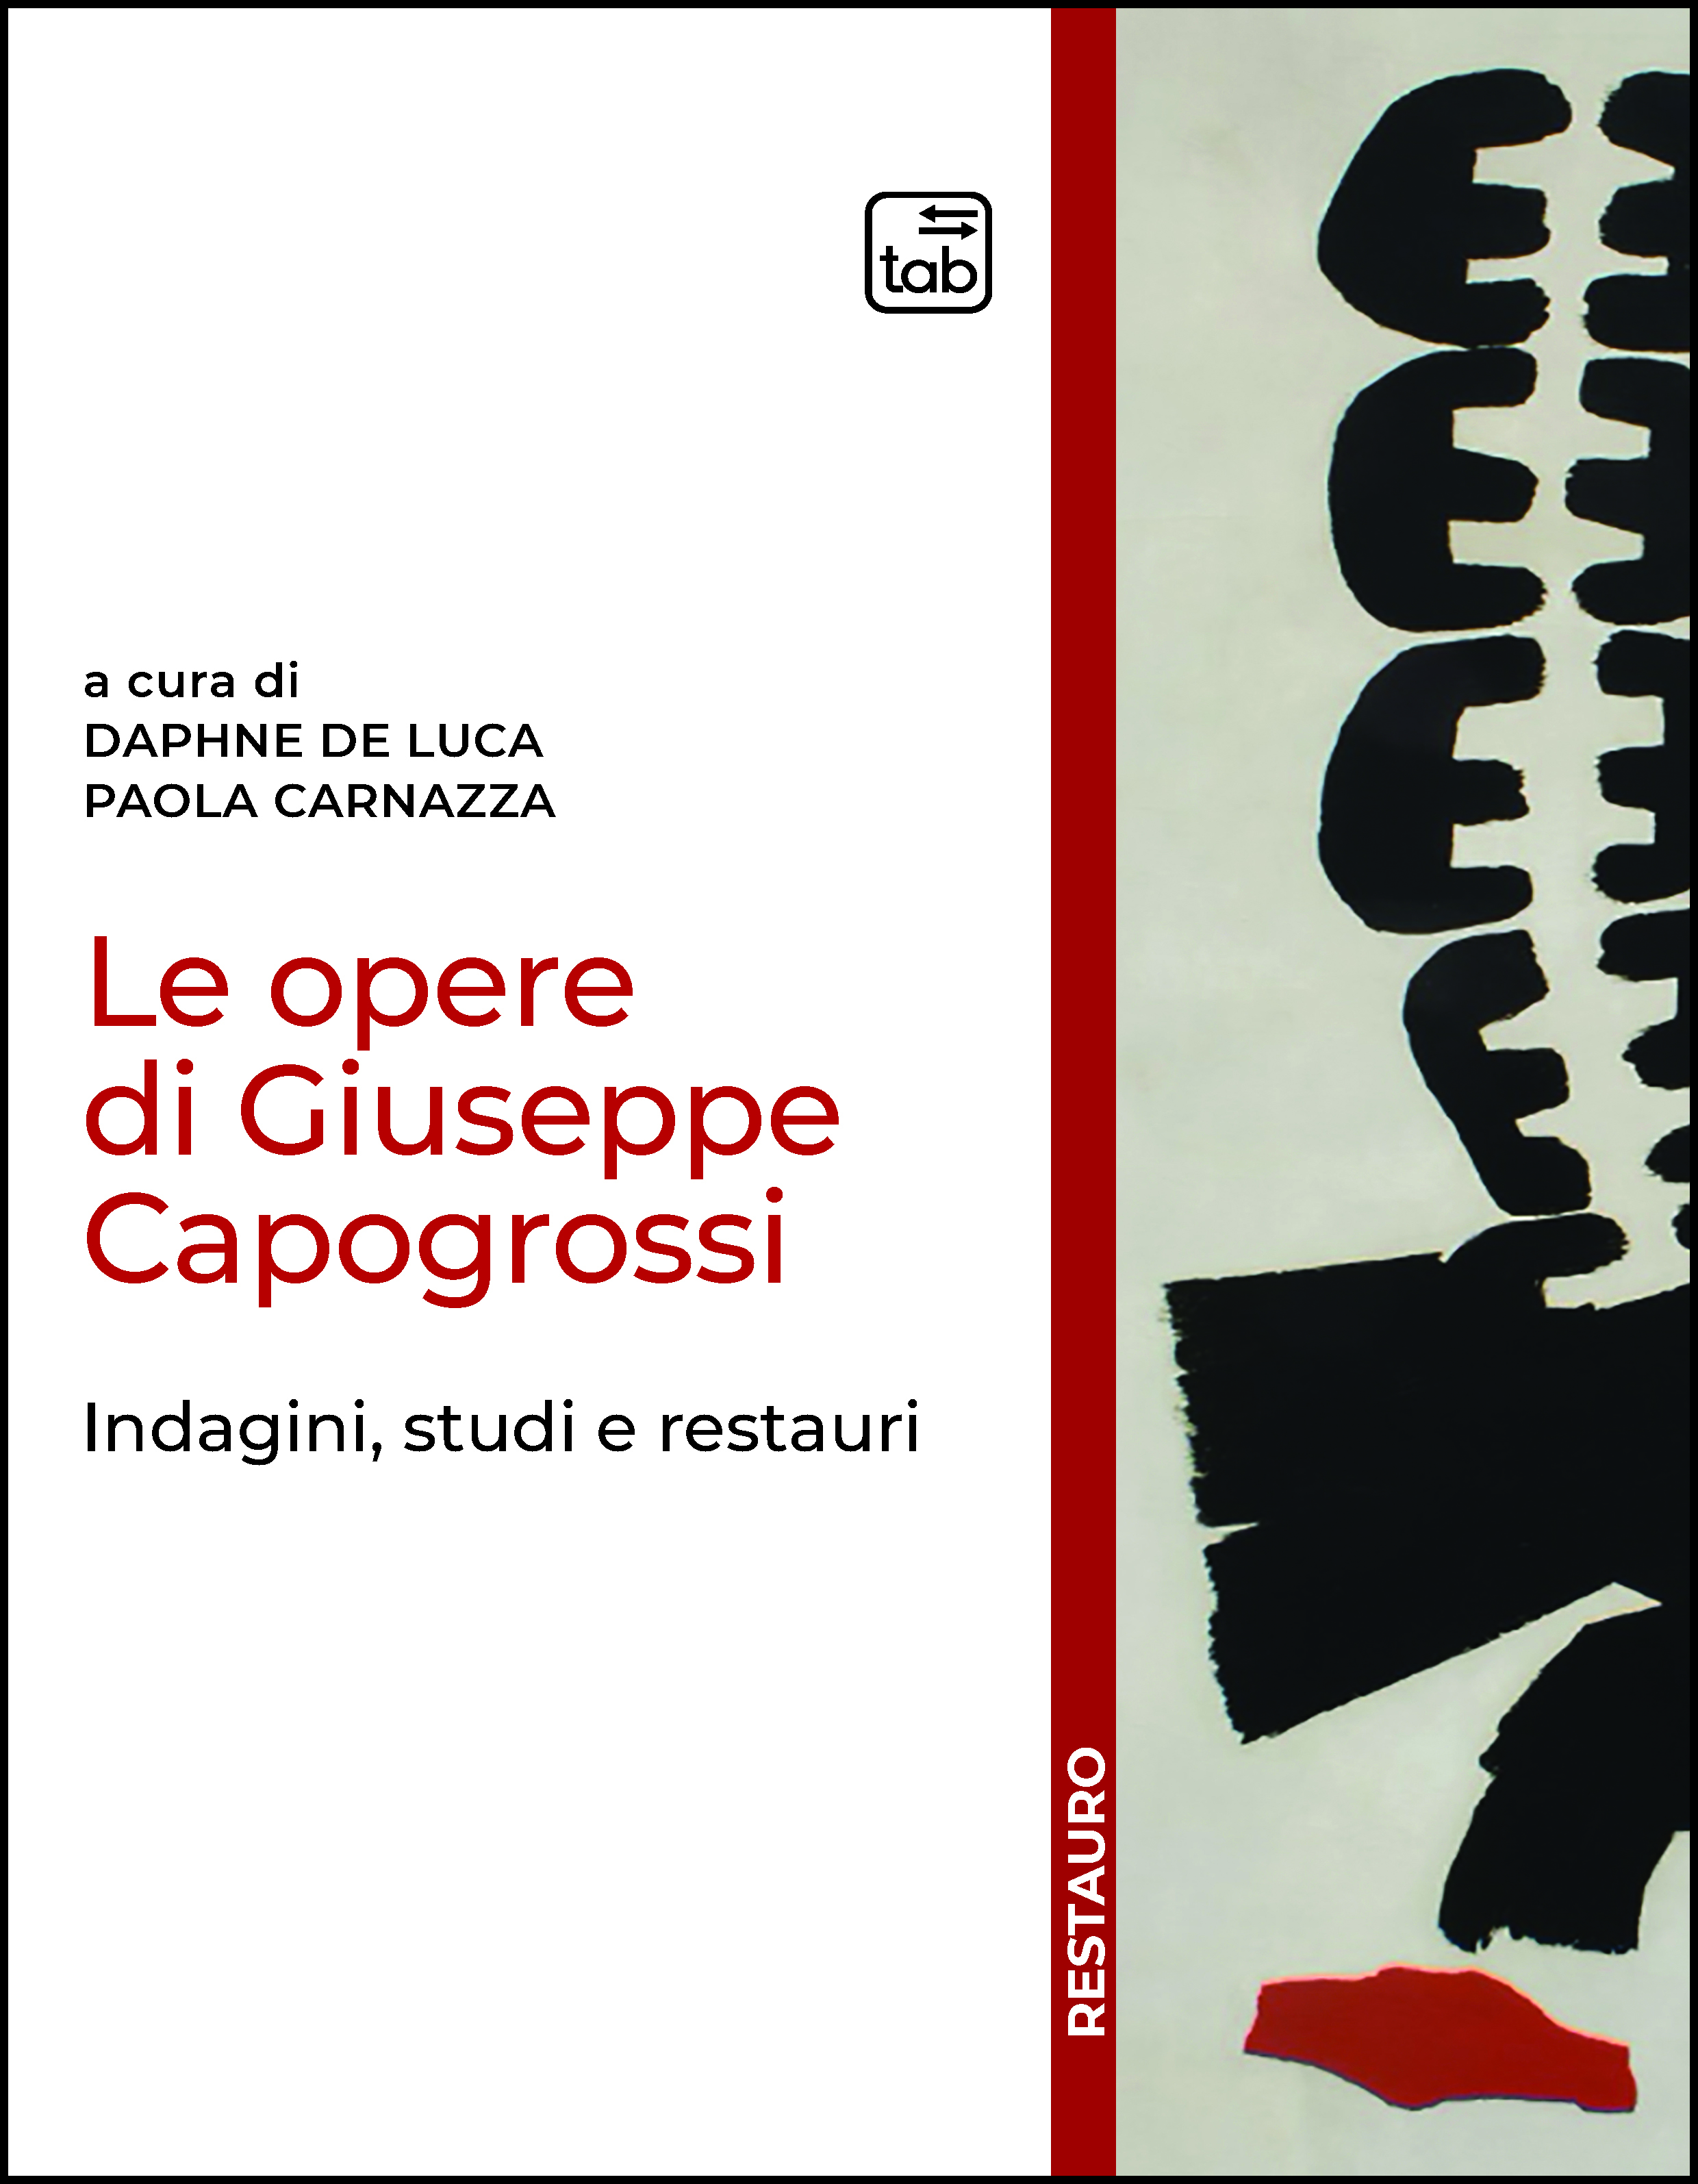 Le opere di Giuseppe Capogrossi